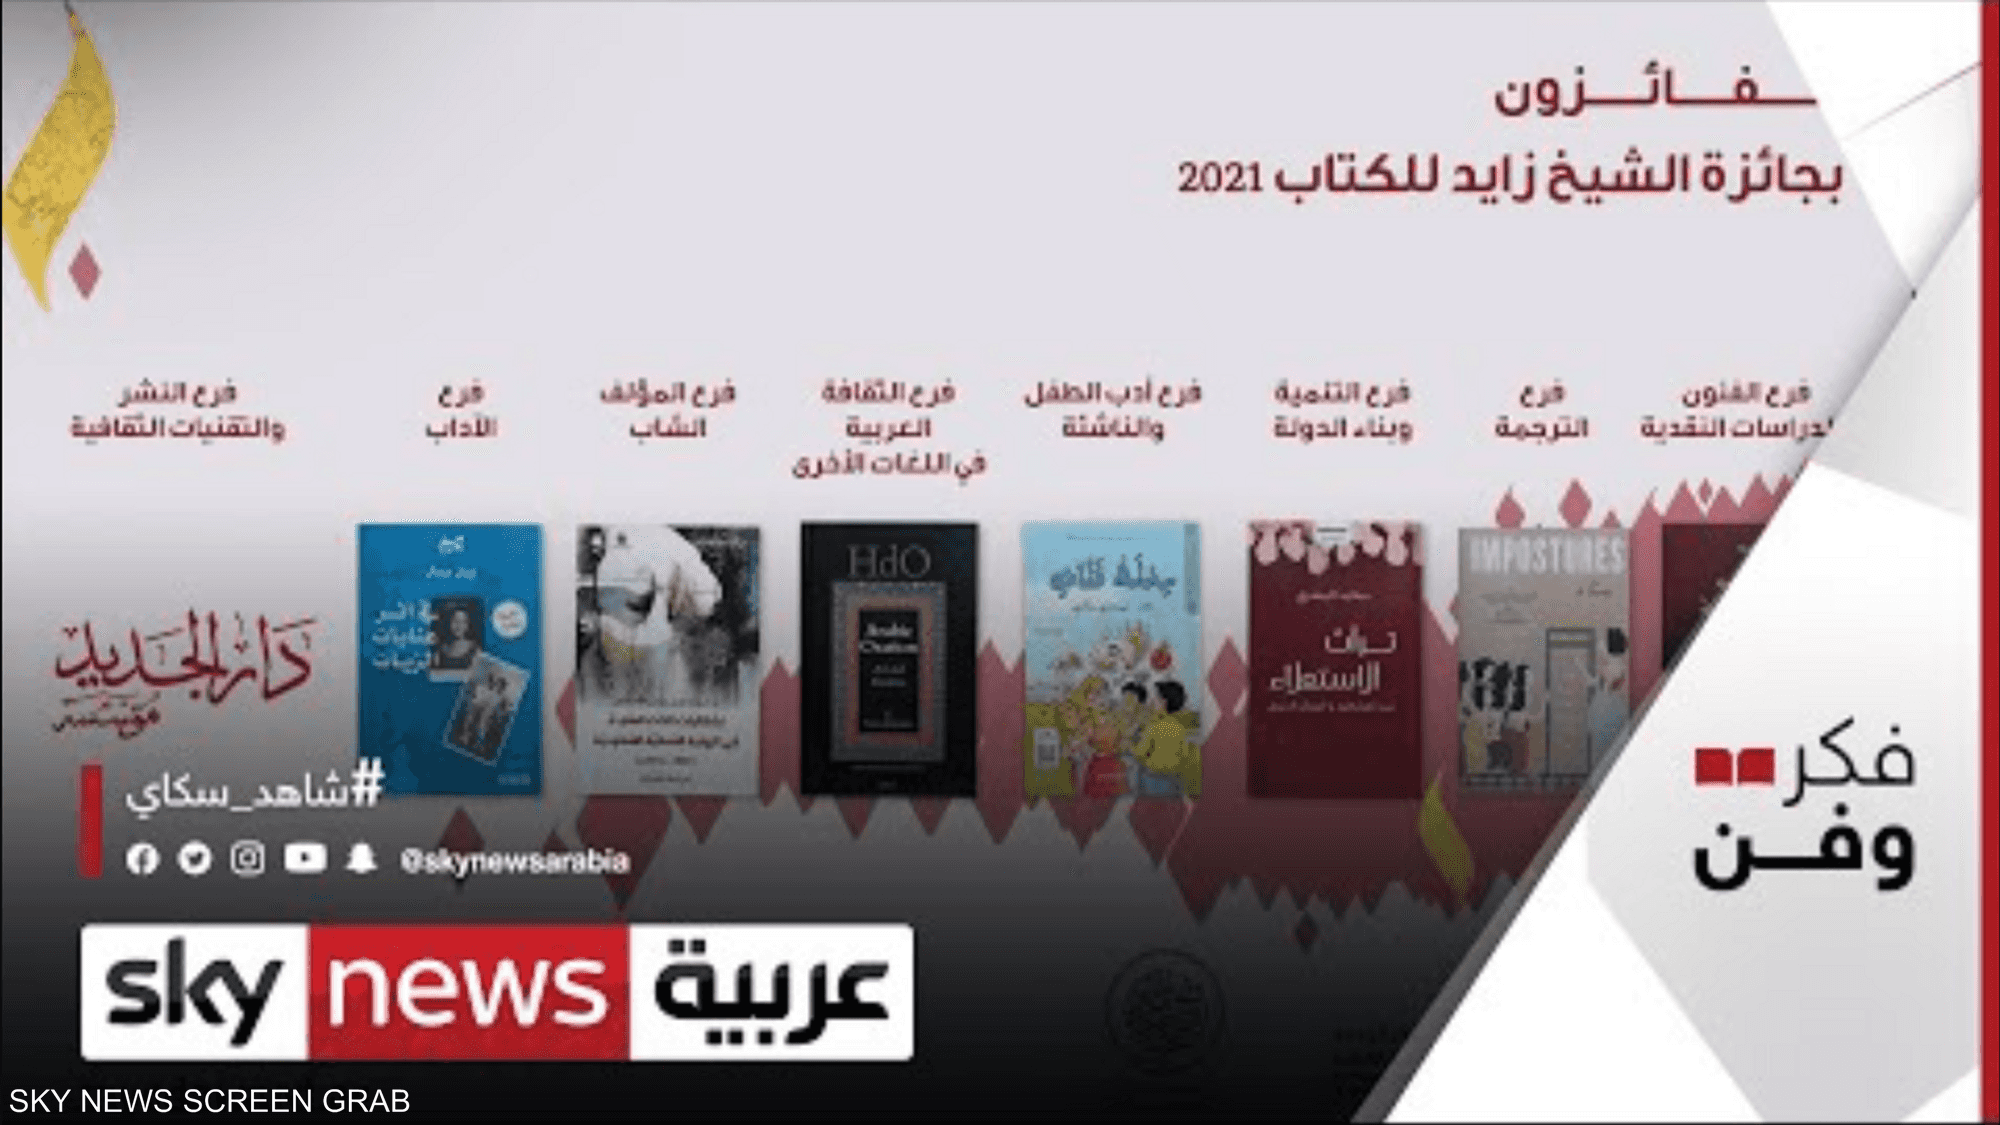 جائزة الشيخ زايد للكتاب تعلن أسماء الفائزين في دورتها 15